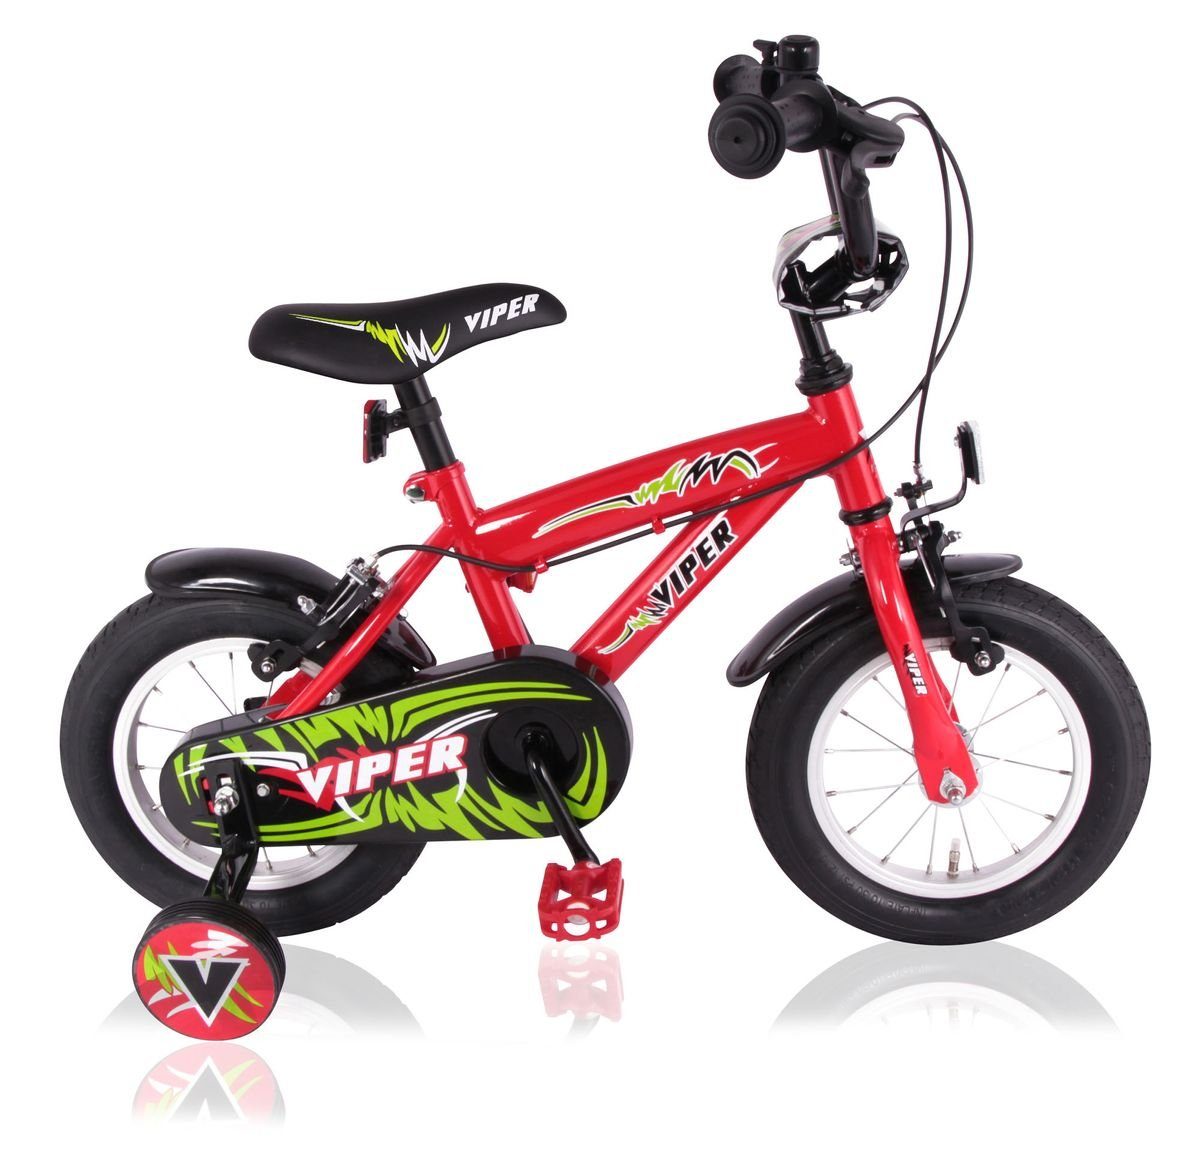 14" Fahrrad Kinderfahrrad Stützräder Rot Kinderfahrrad Kinderrad Jungenfahrrad 